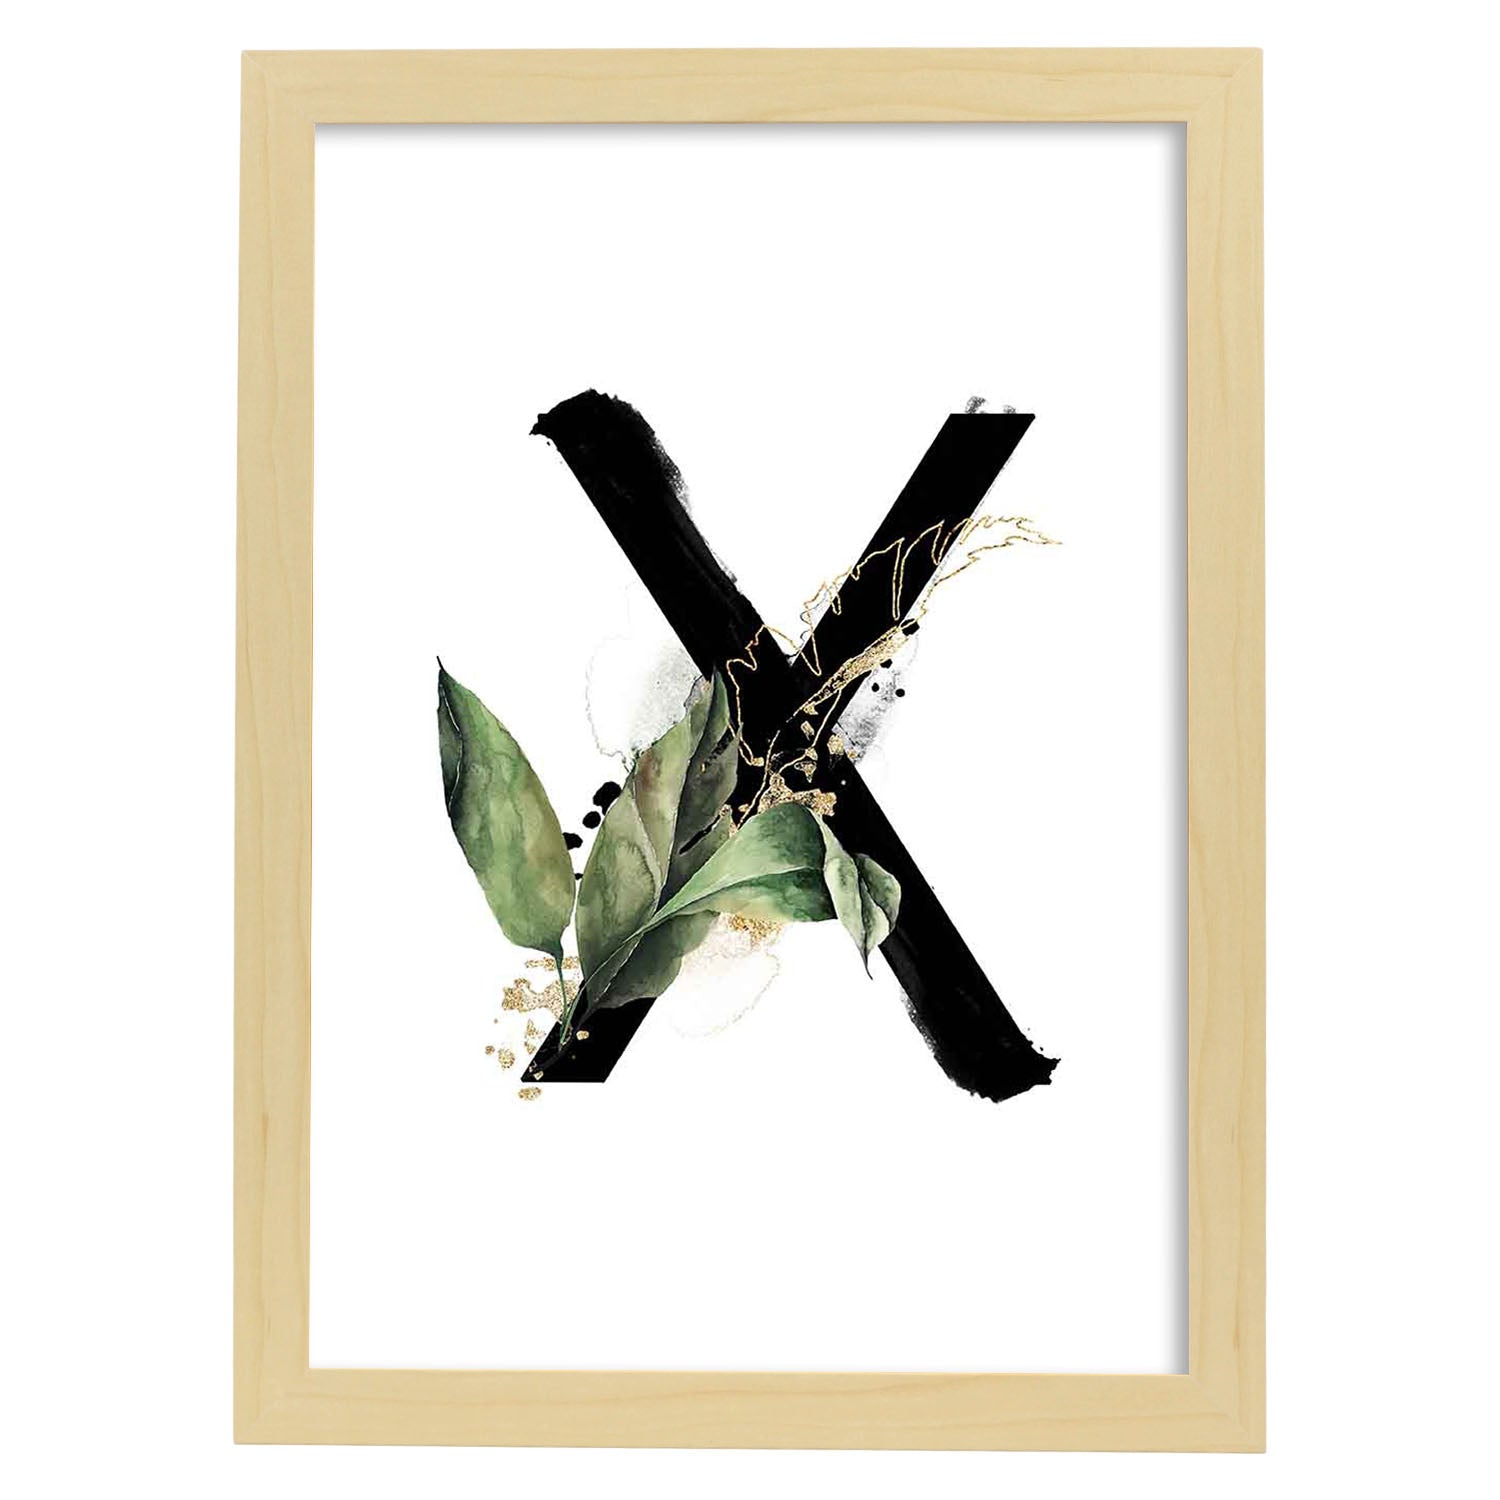 Poster de letra X. Lámina estilo Jungla Negra con imágenes del alfabeto.-Artwork-Nacnic-A4-Marco Madera clara-Nacnic Estudio SL